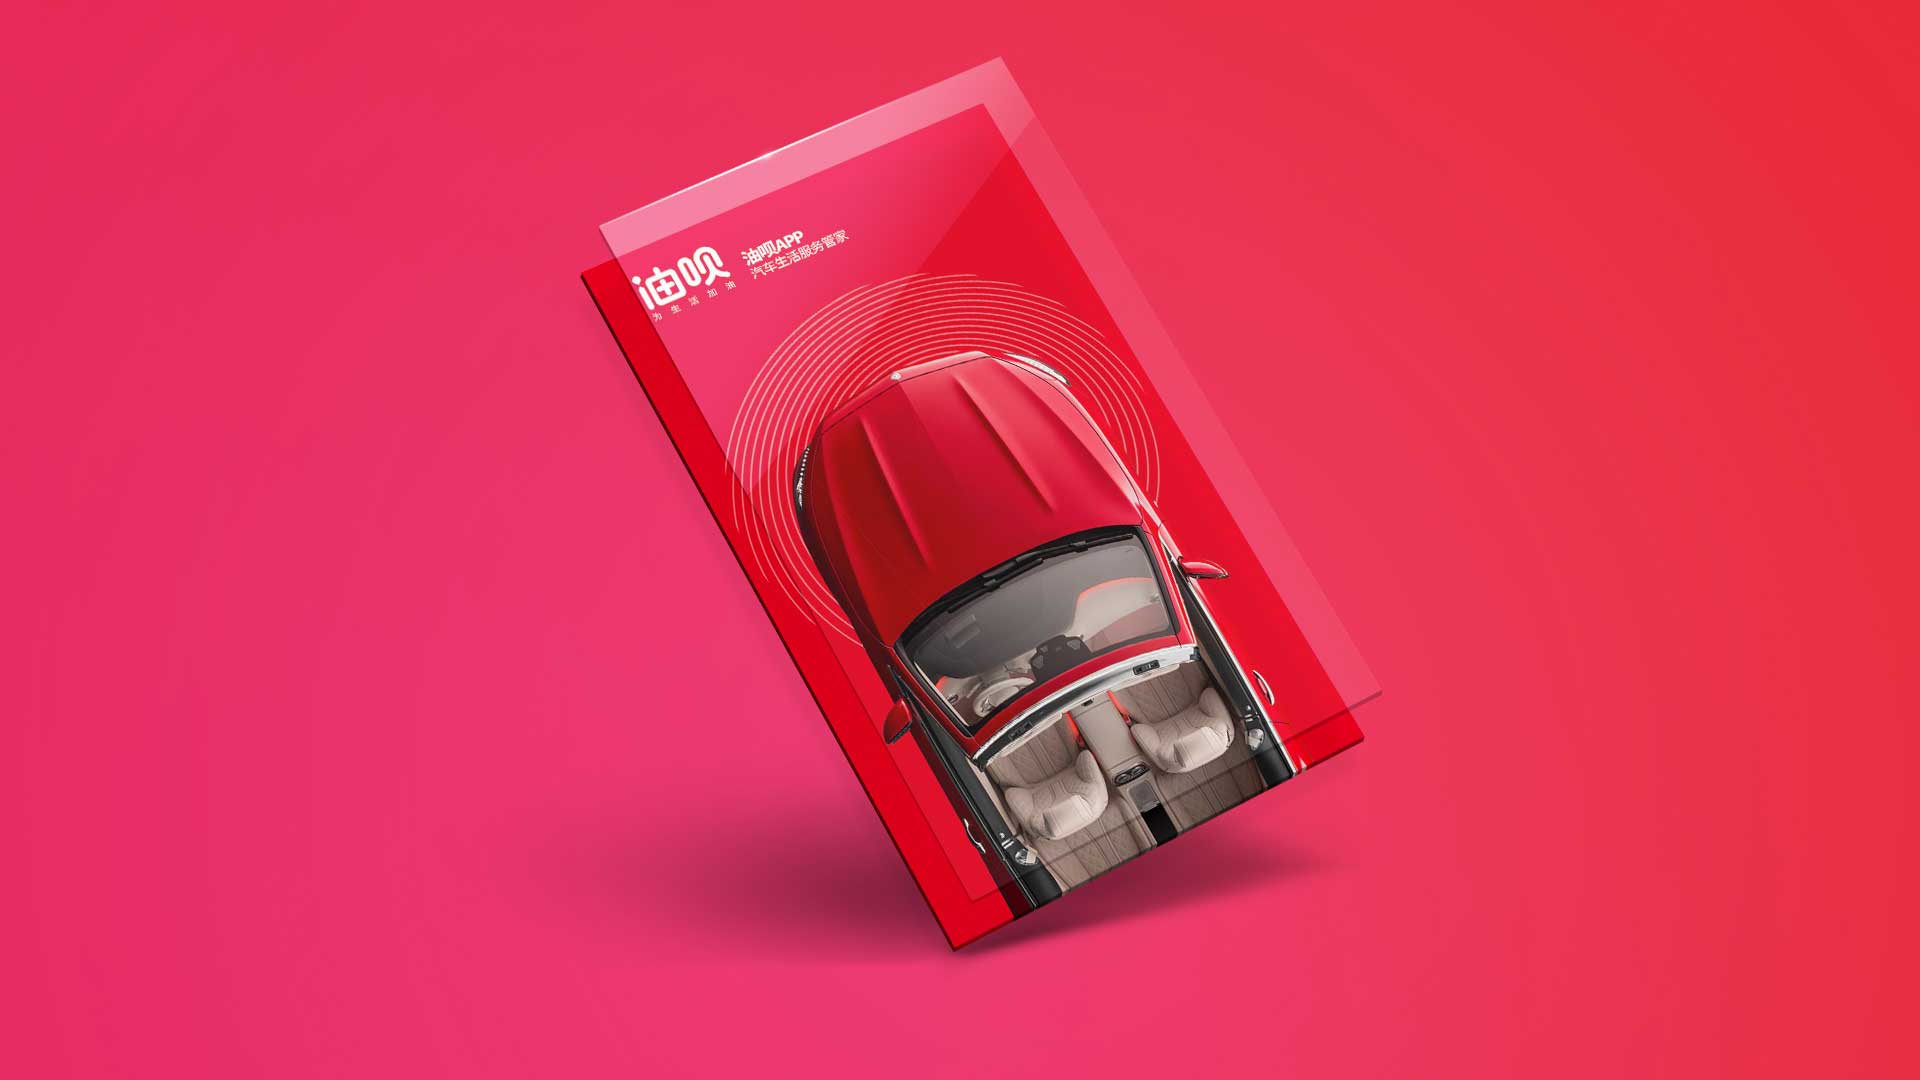 油呗app 汽车生活服务品牌设计 汽车服务品牌  logo设计  app设计 vi设计 互与互创新品牌顾问